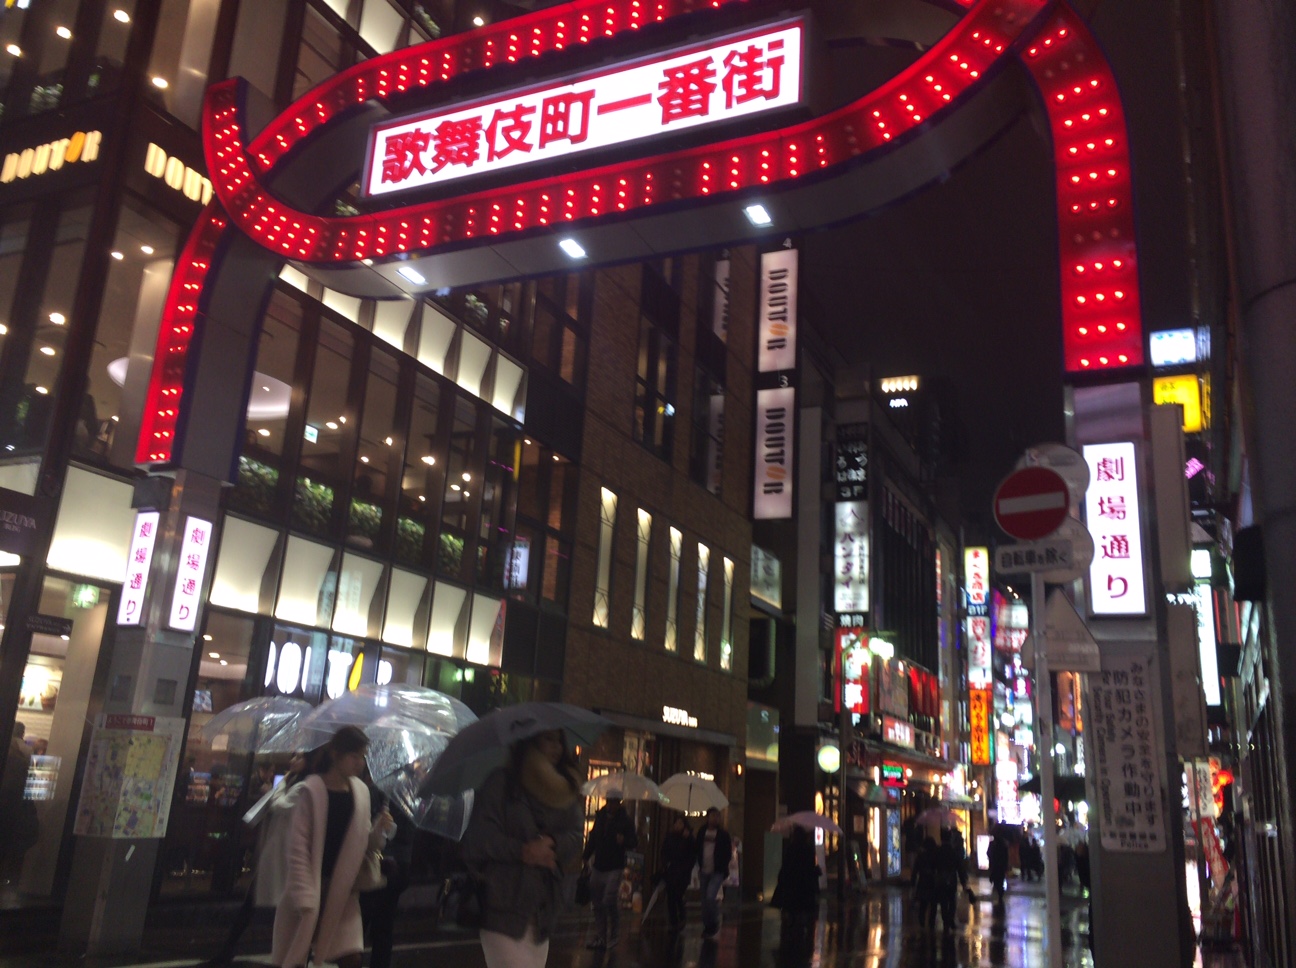 「歌舞伎町一番街」ネオンサイン